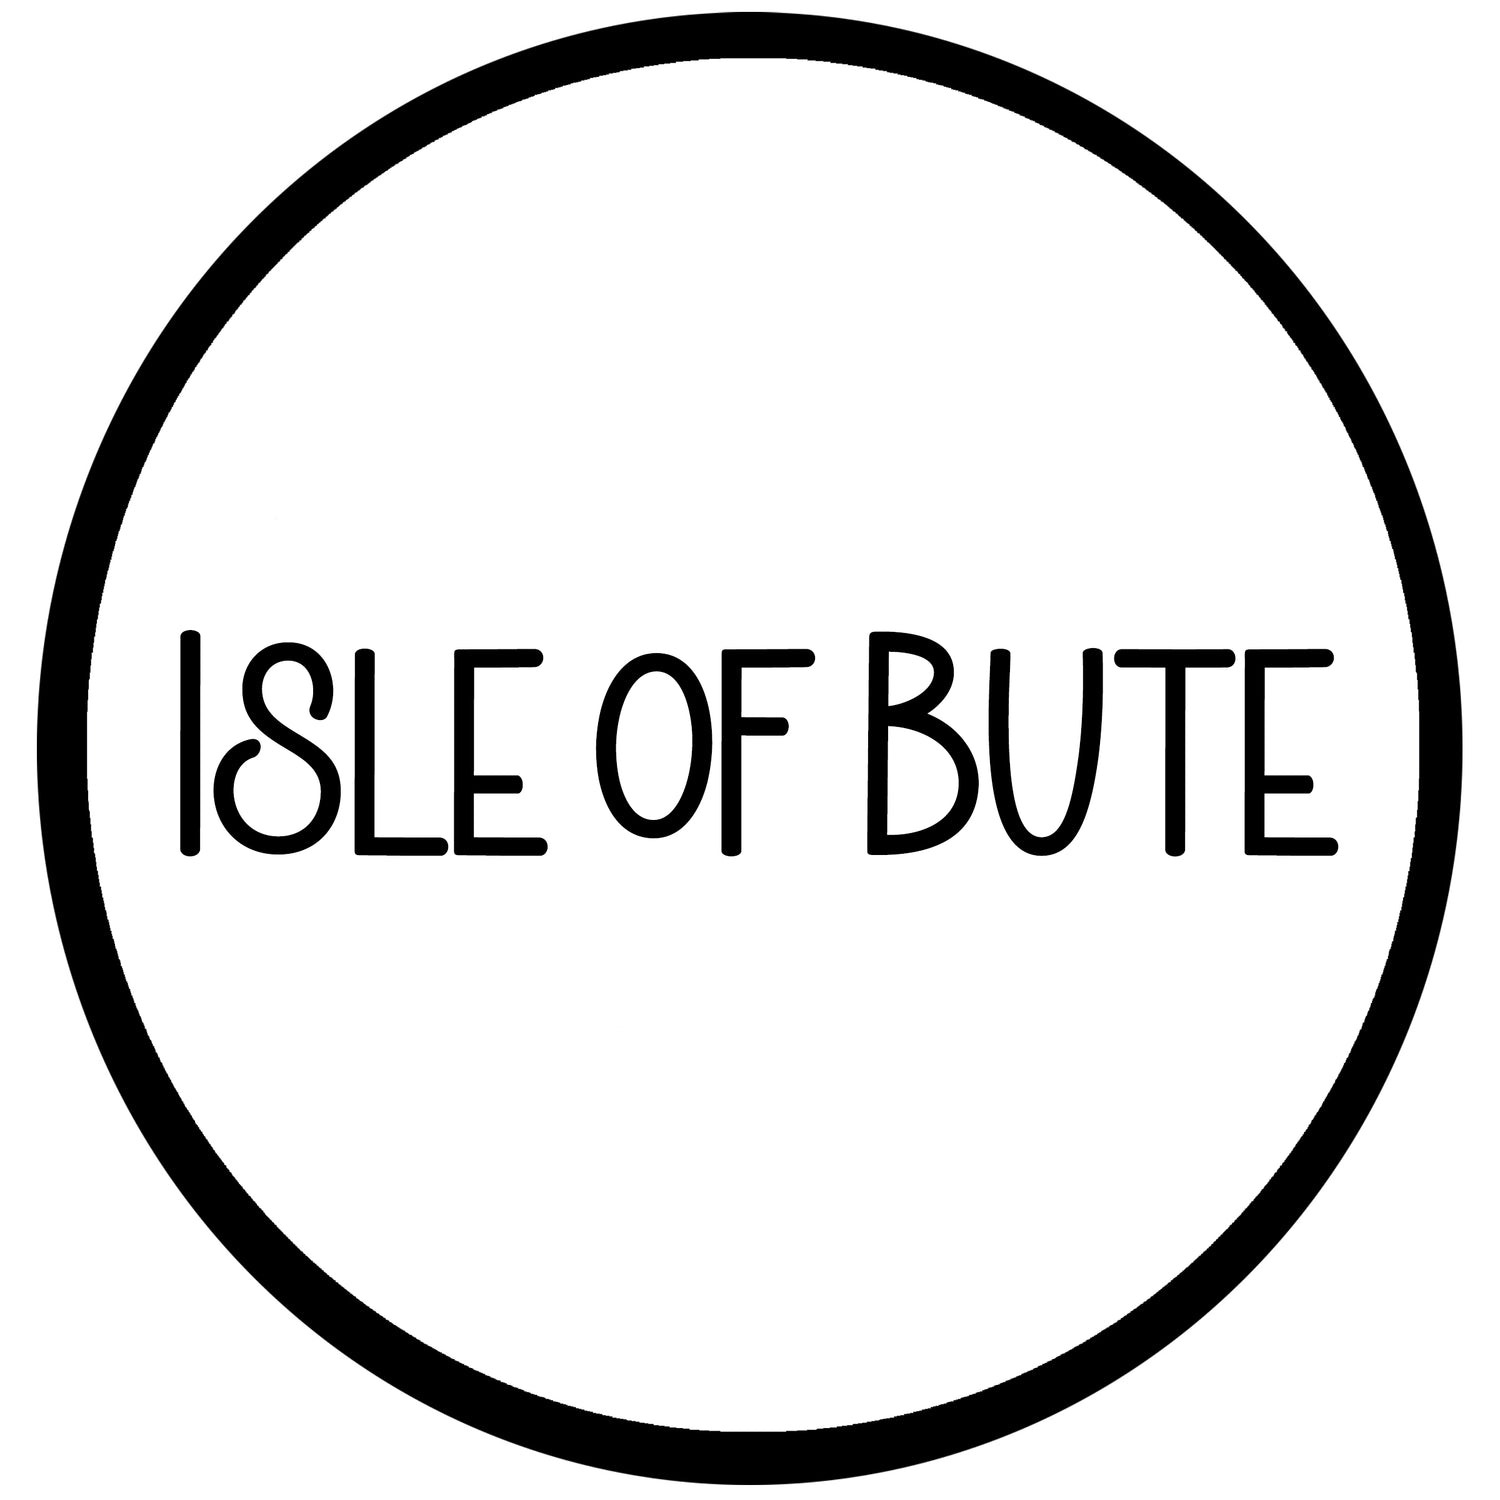 Isle of Bute, Argyll